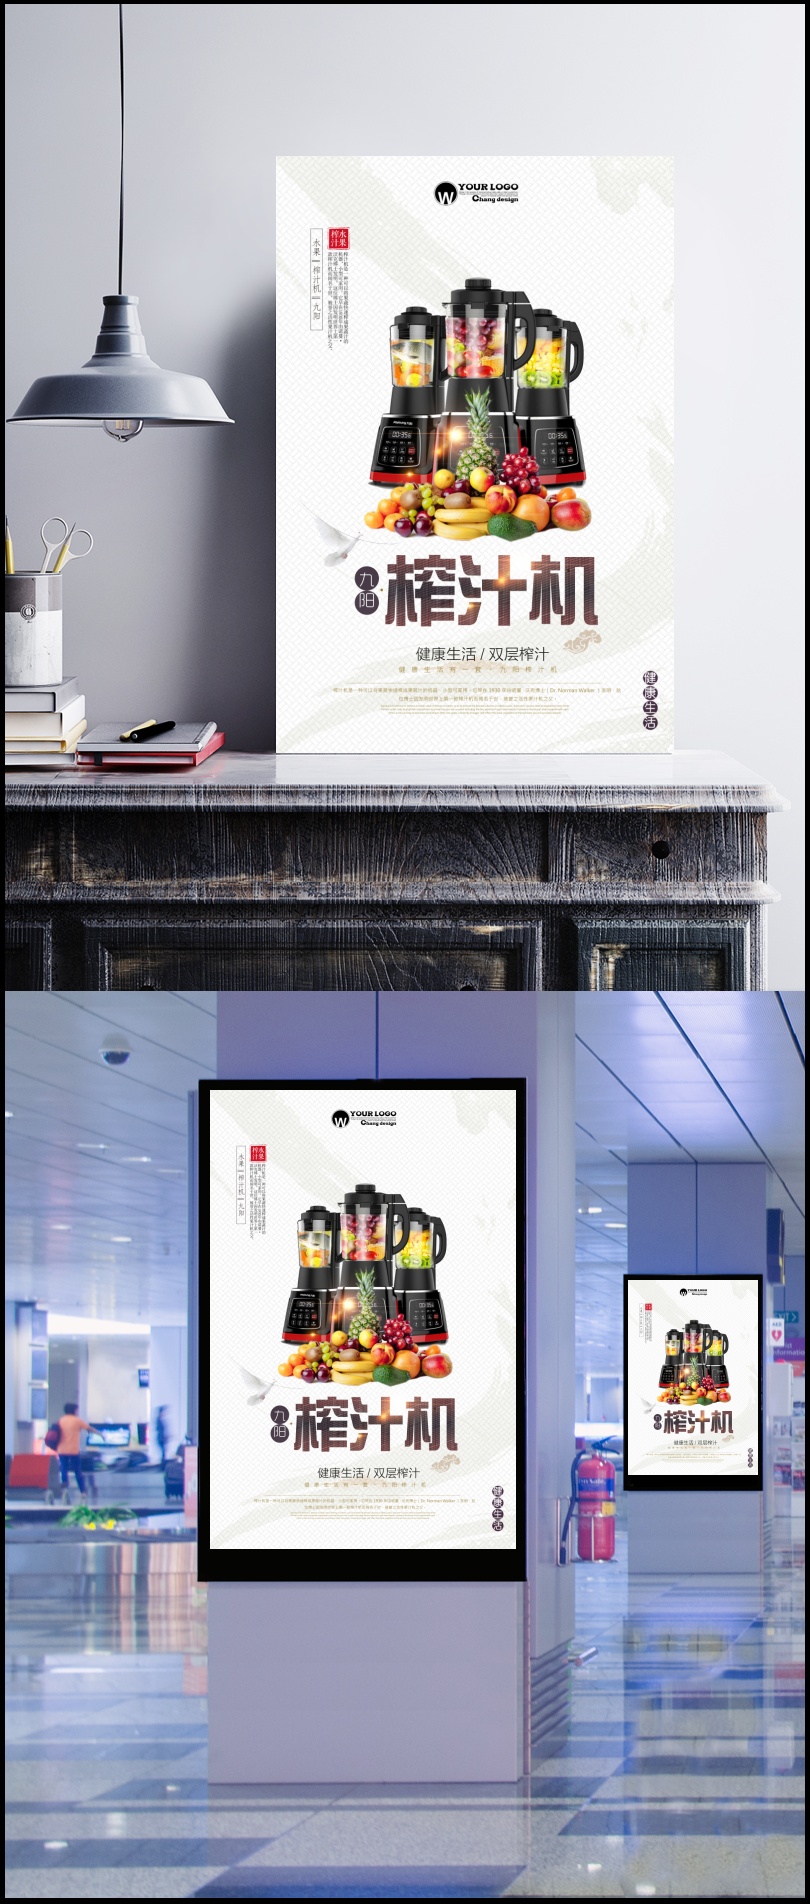 九阳榨汁机宣传海报设计PSD素材